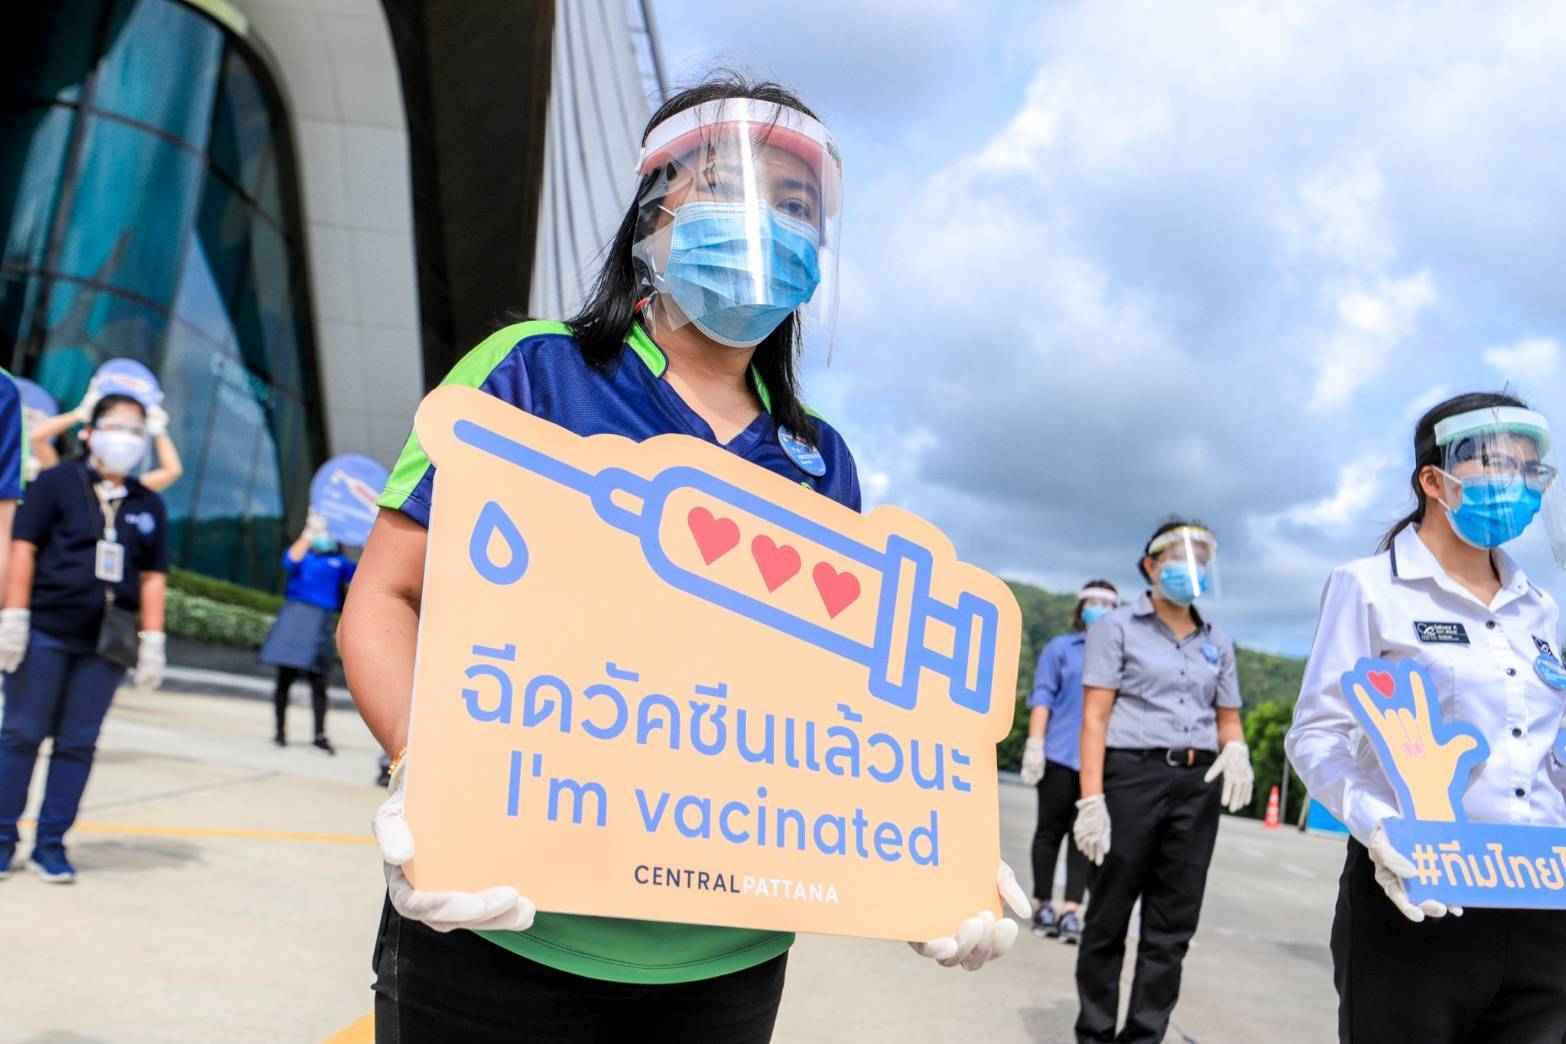 “เซ็นทรัล ภูเก็ต” นำร่องเป็นศูนย์การค้าแห่งแรกในไทย สร้างภูมิคุ้มกันหมู่ได้สำเร็จ พนักงานรับวัคซีนครบ 2 เข็มแล้ว 85% 